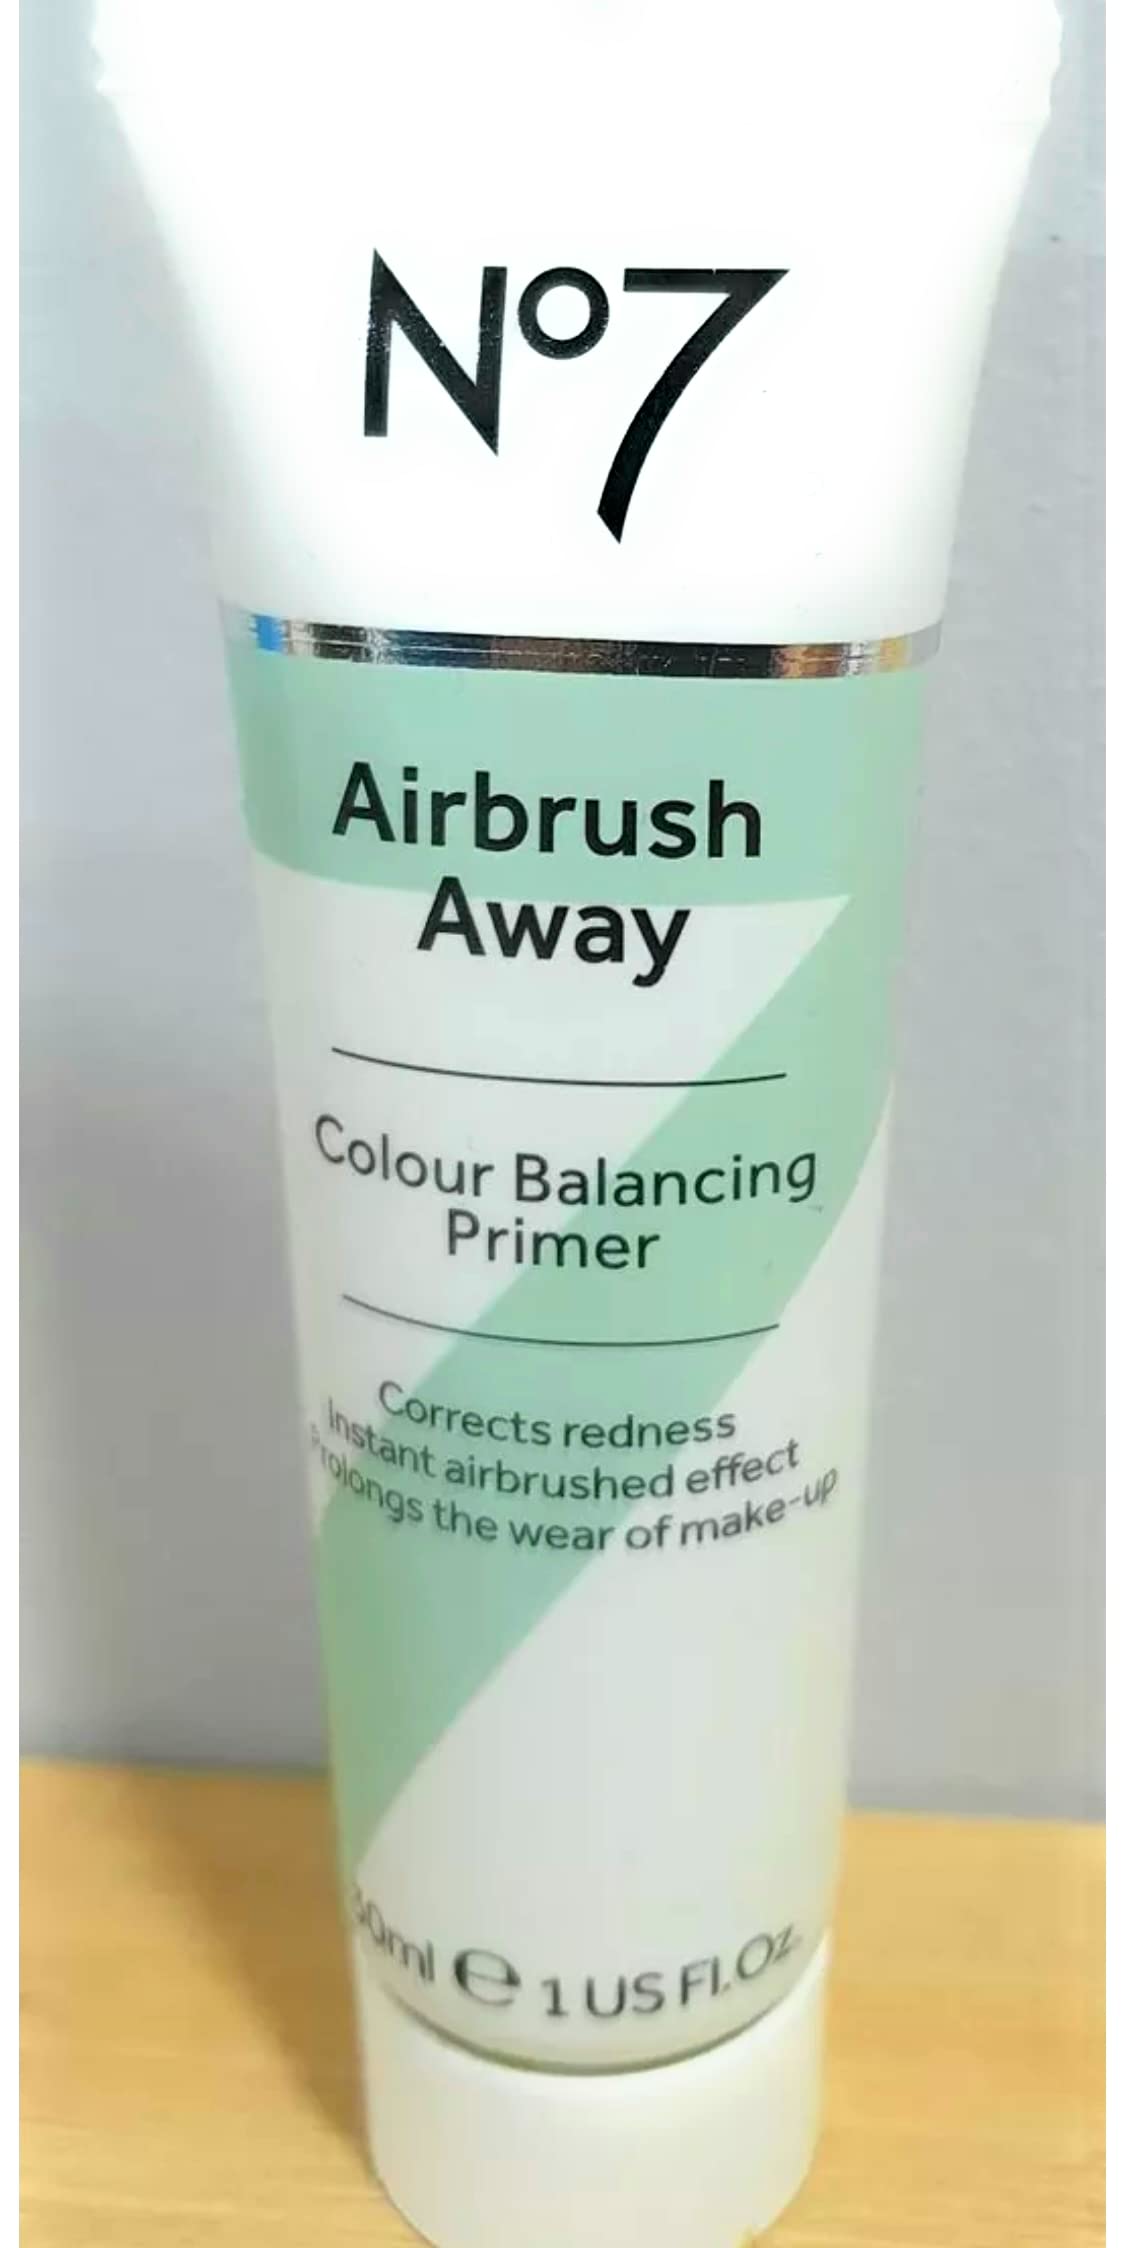 No7 Airbrush Away Colour Balancing Primer